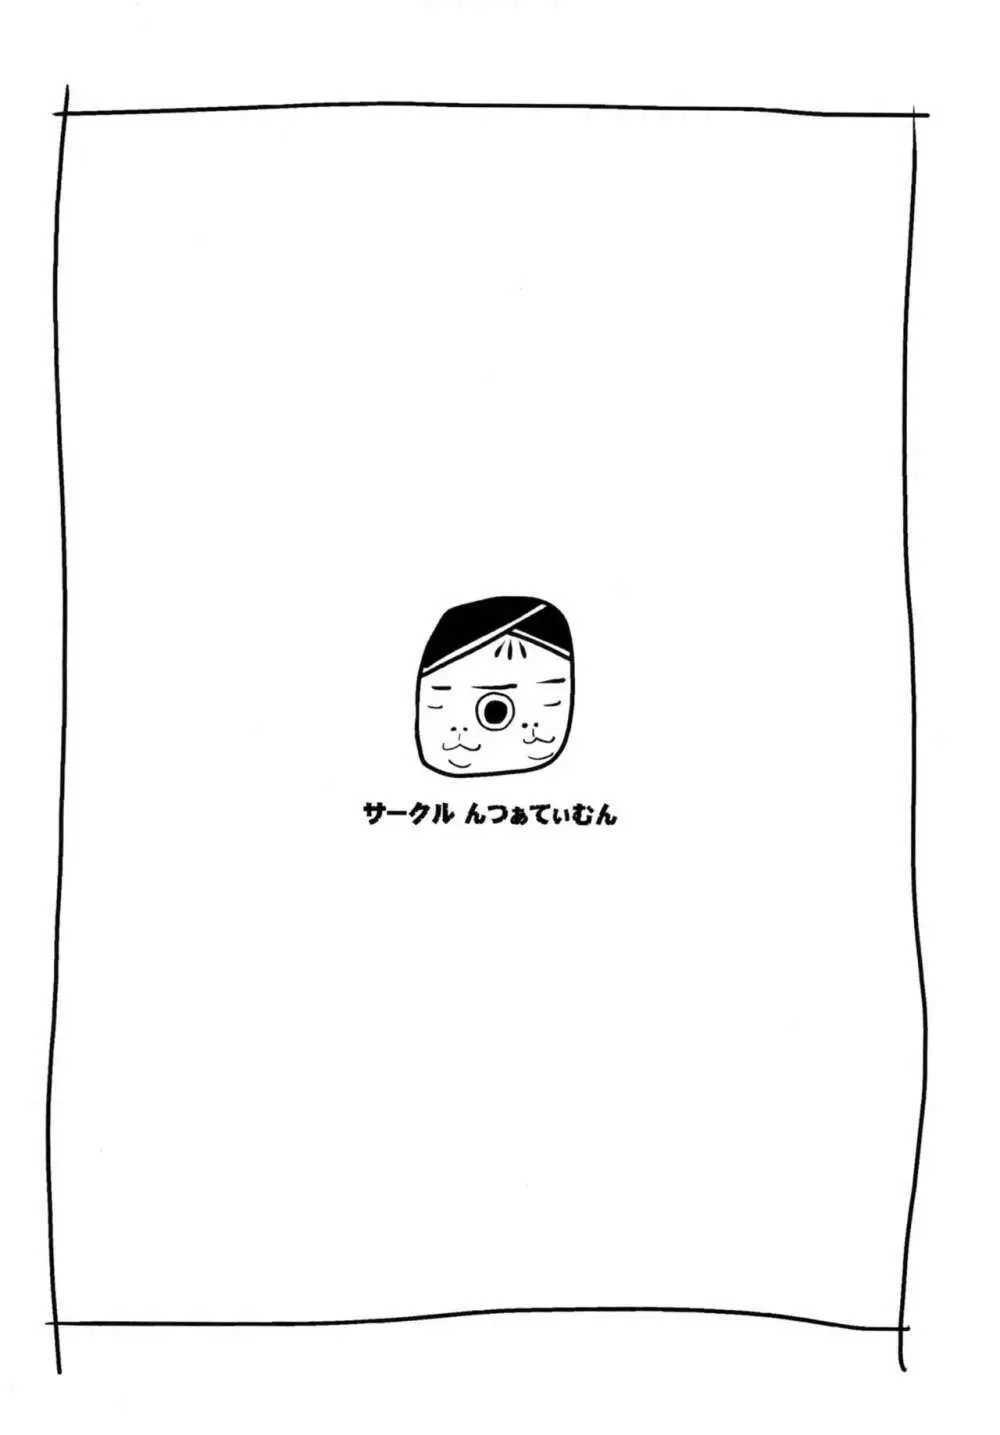 [んつぁてぃむん (yurarin)] 泉理と壁の薄いボロアパートでメイクチャイルド(子作り)する本 (Chaos;Child) 16ページ